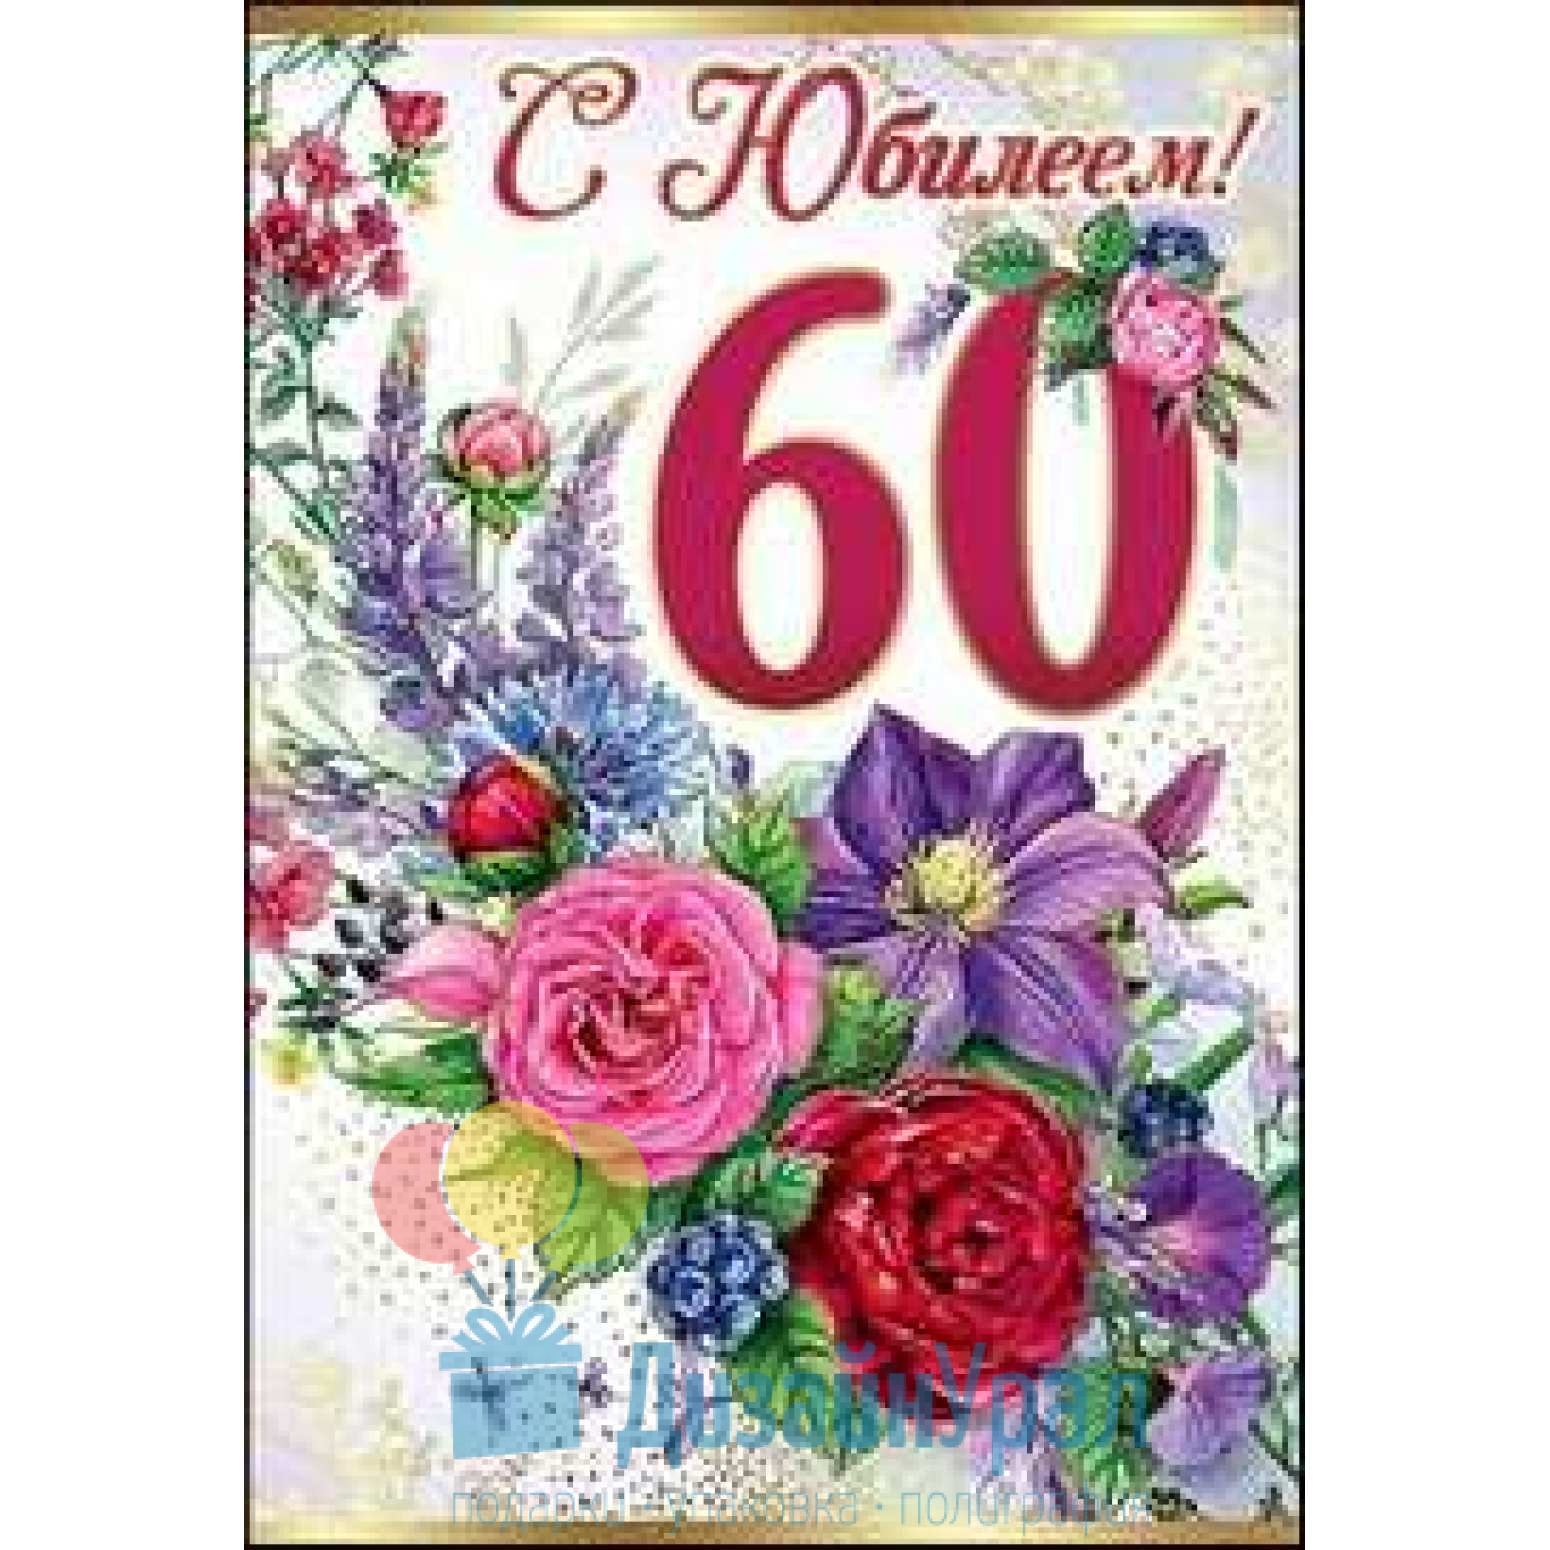 Короткие поздравления с юбилеем 60 лет женщине